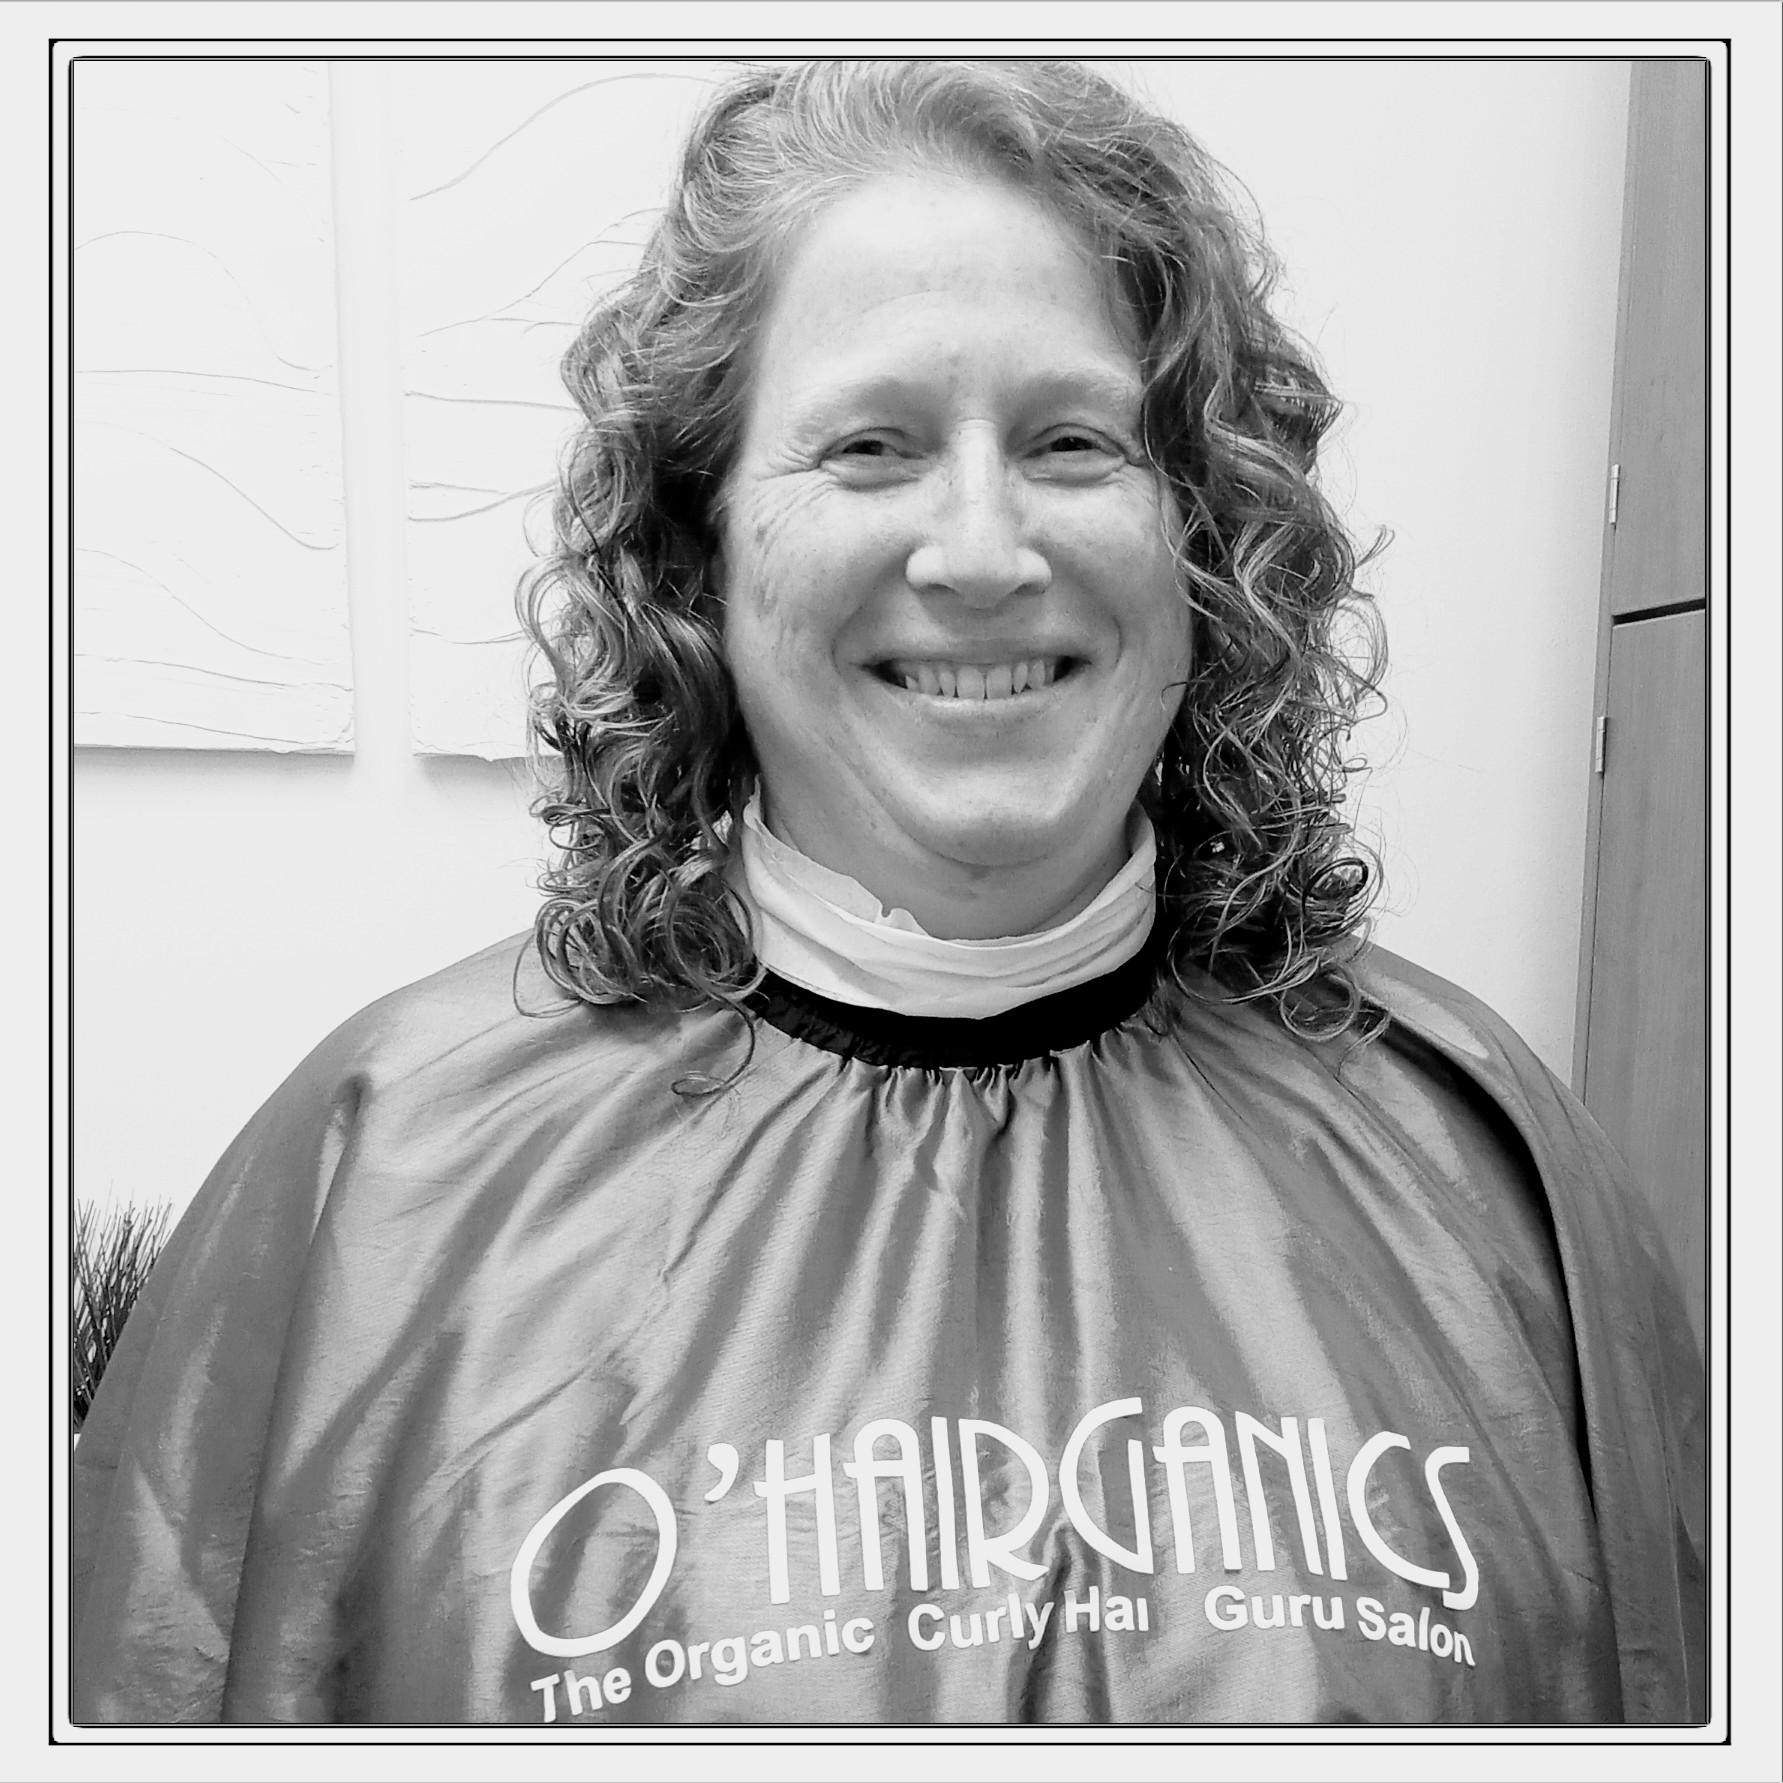 Curly Hair Salon: O'HAIRGANICS: The Organic Curly Hair, Guru Salon